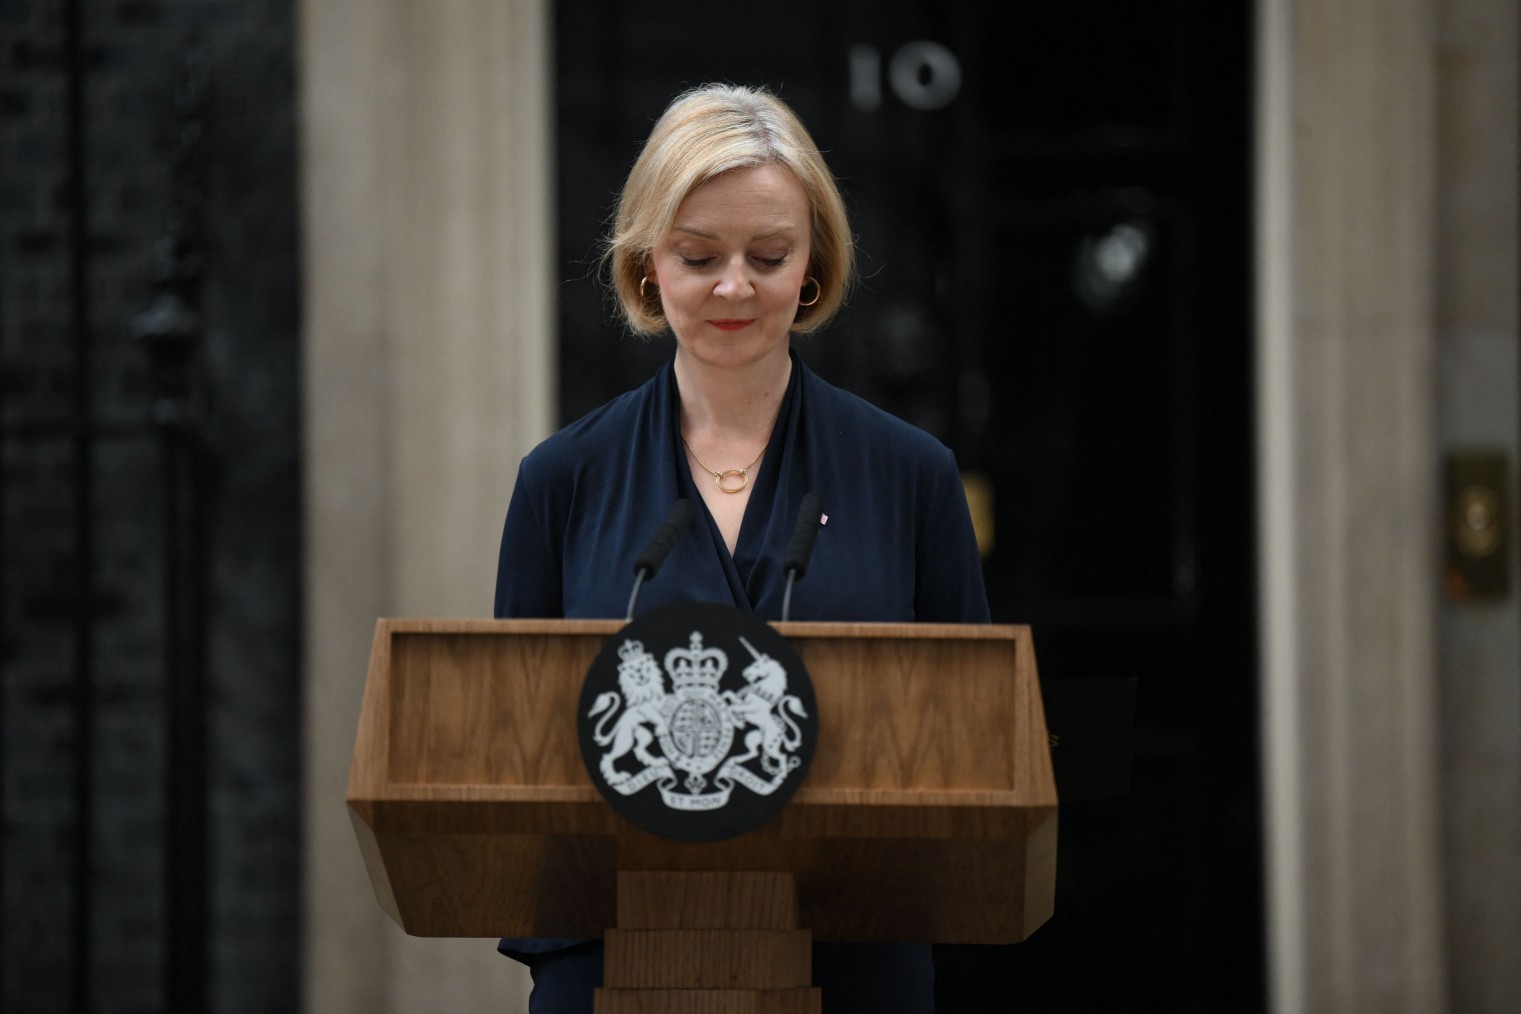 Primeira-ministra do Reino Unido, Liz Truss, durante discurso de renúncia em Downing Street — Foto: DANIEL LEAL/AFP